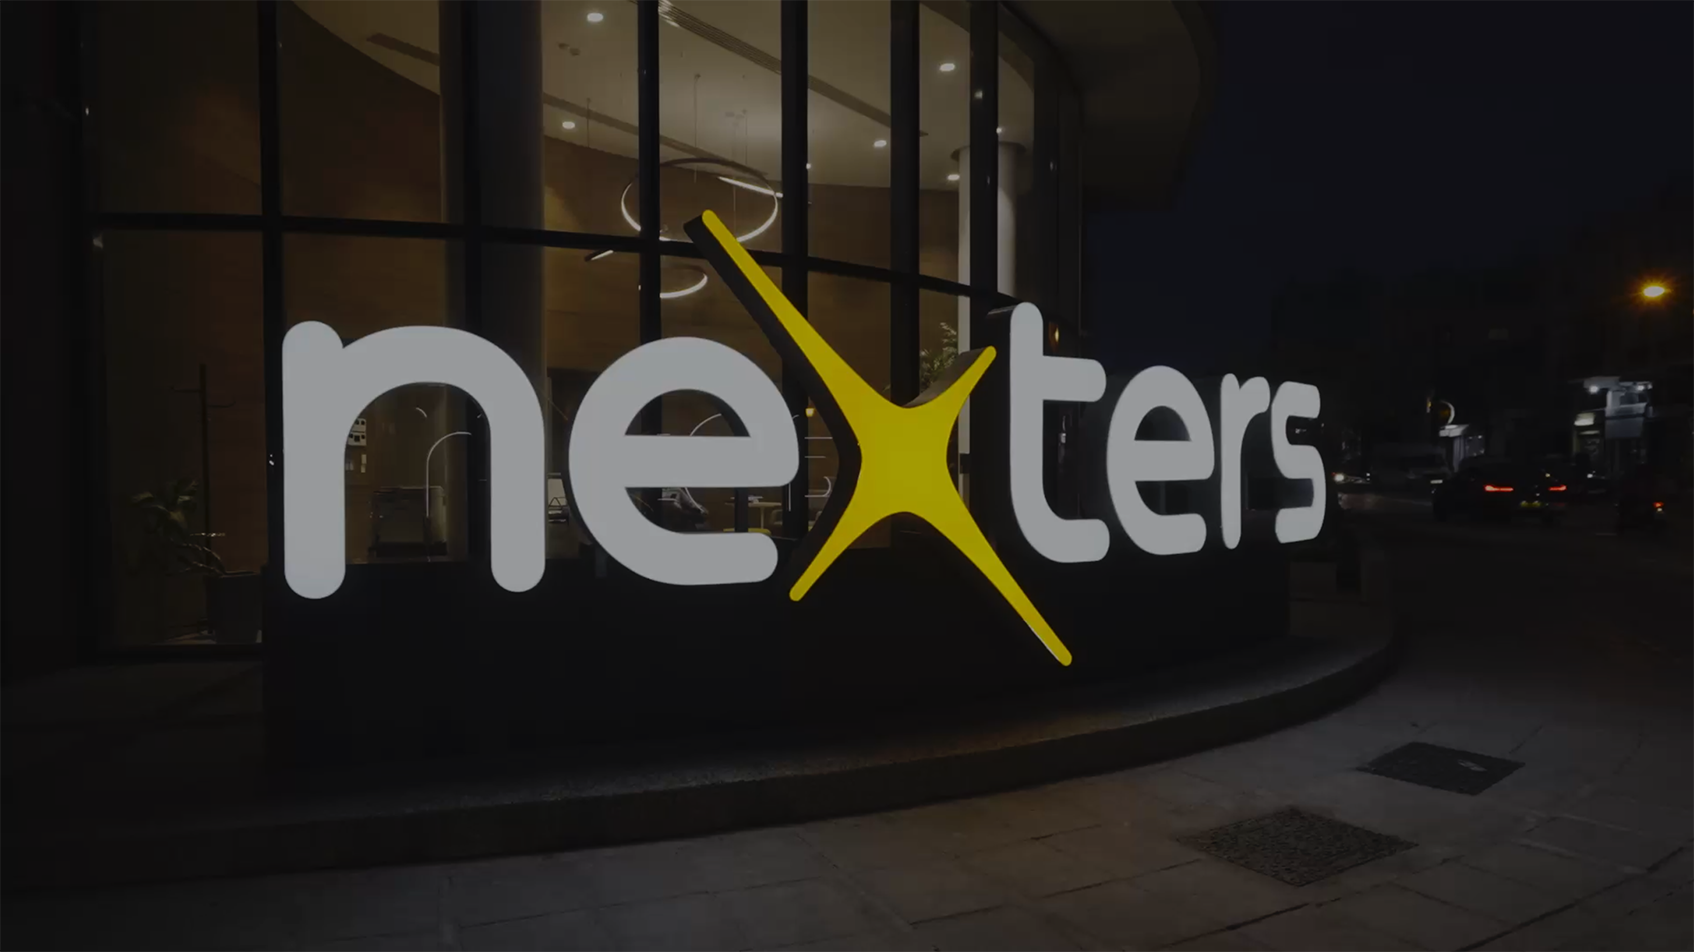 Բջջային խաղերի խոշոր ծրագրավորման ընկերություն Nexters-ը գրասենյակ է բացել Հայաստանում